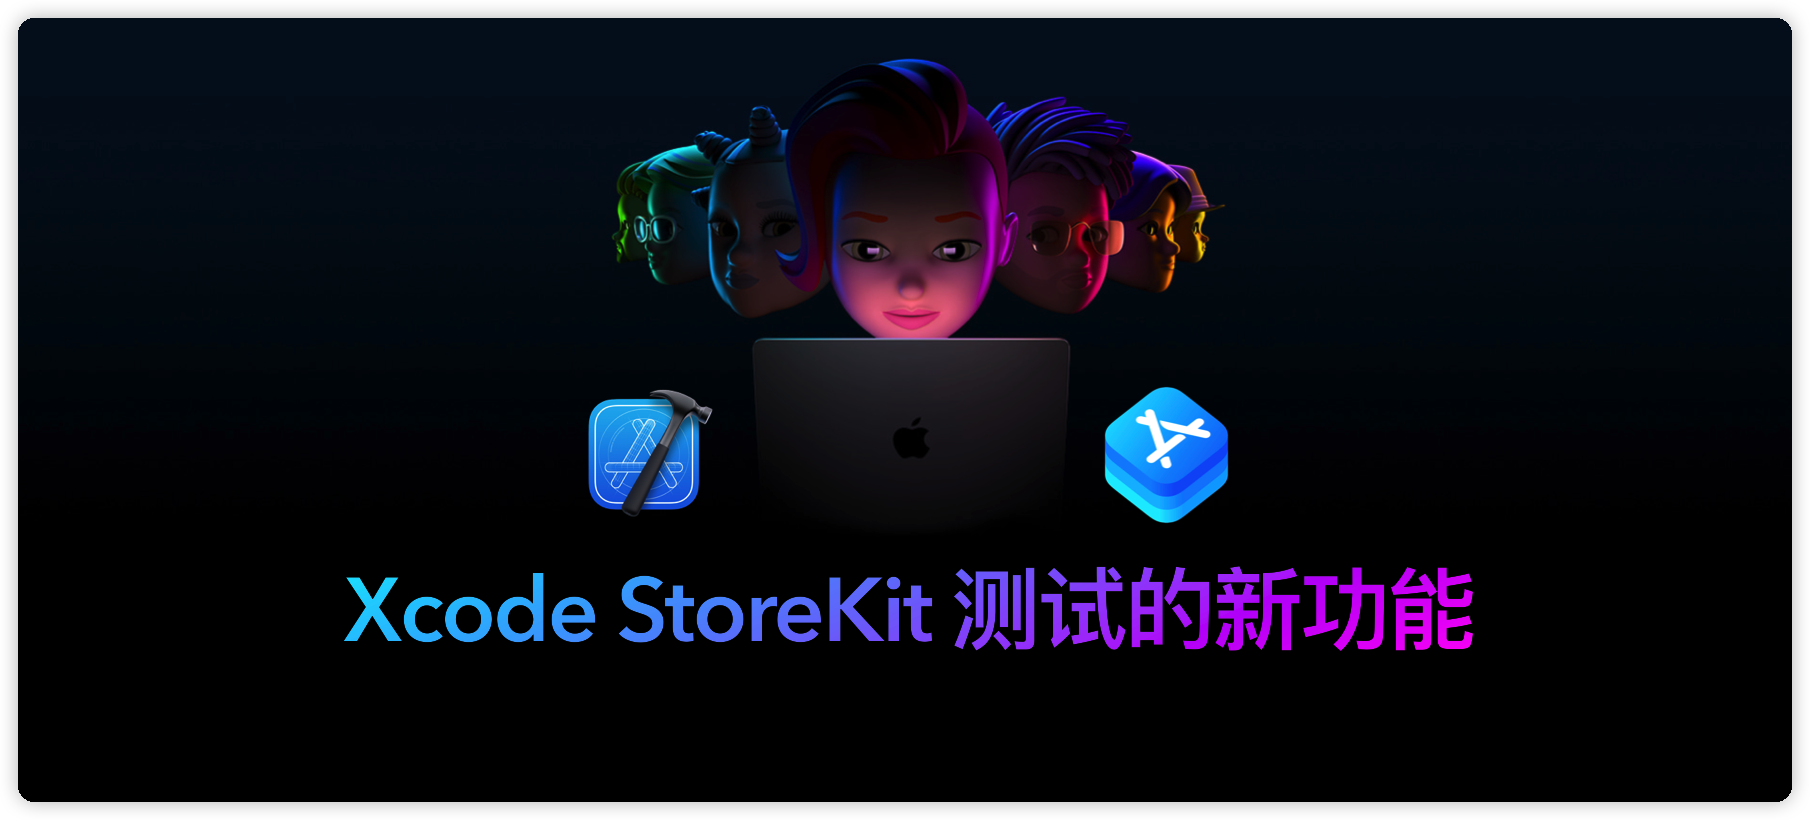 WWDC22-Xcode-StoreKit-Testing-00